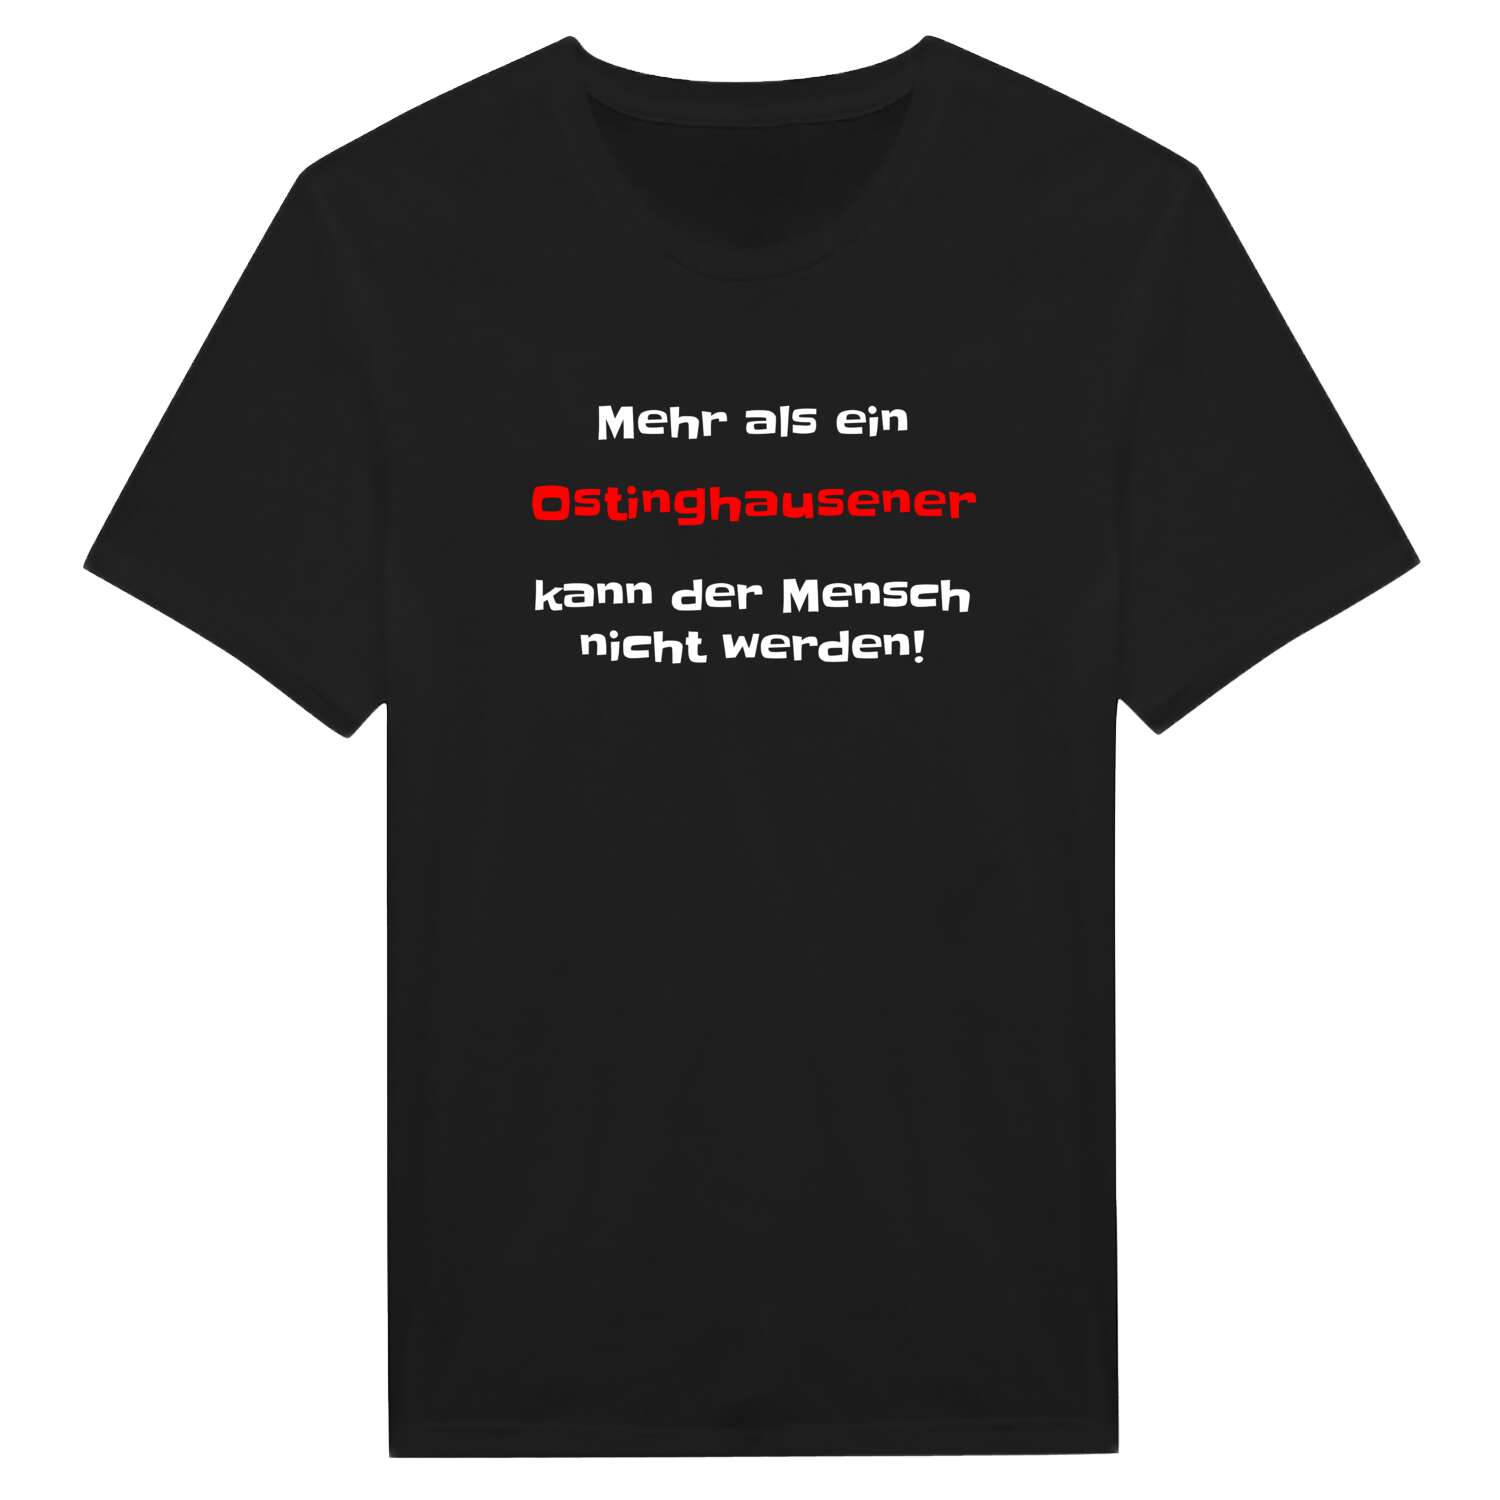 Ostinghausen T-Shirt »Mehr als ein«